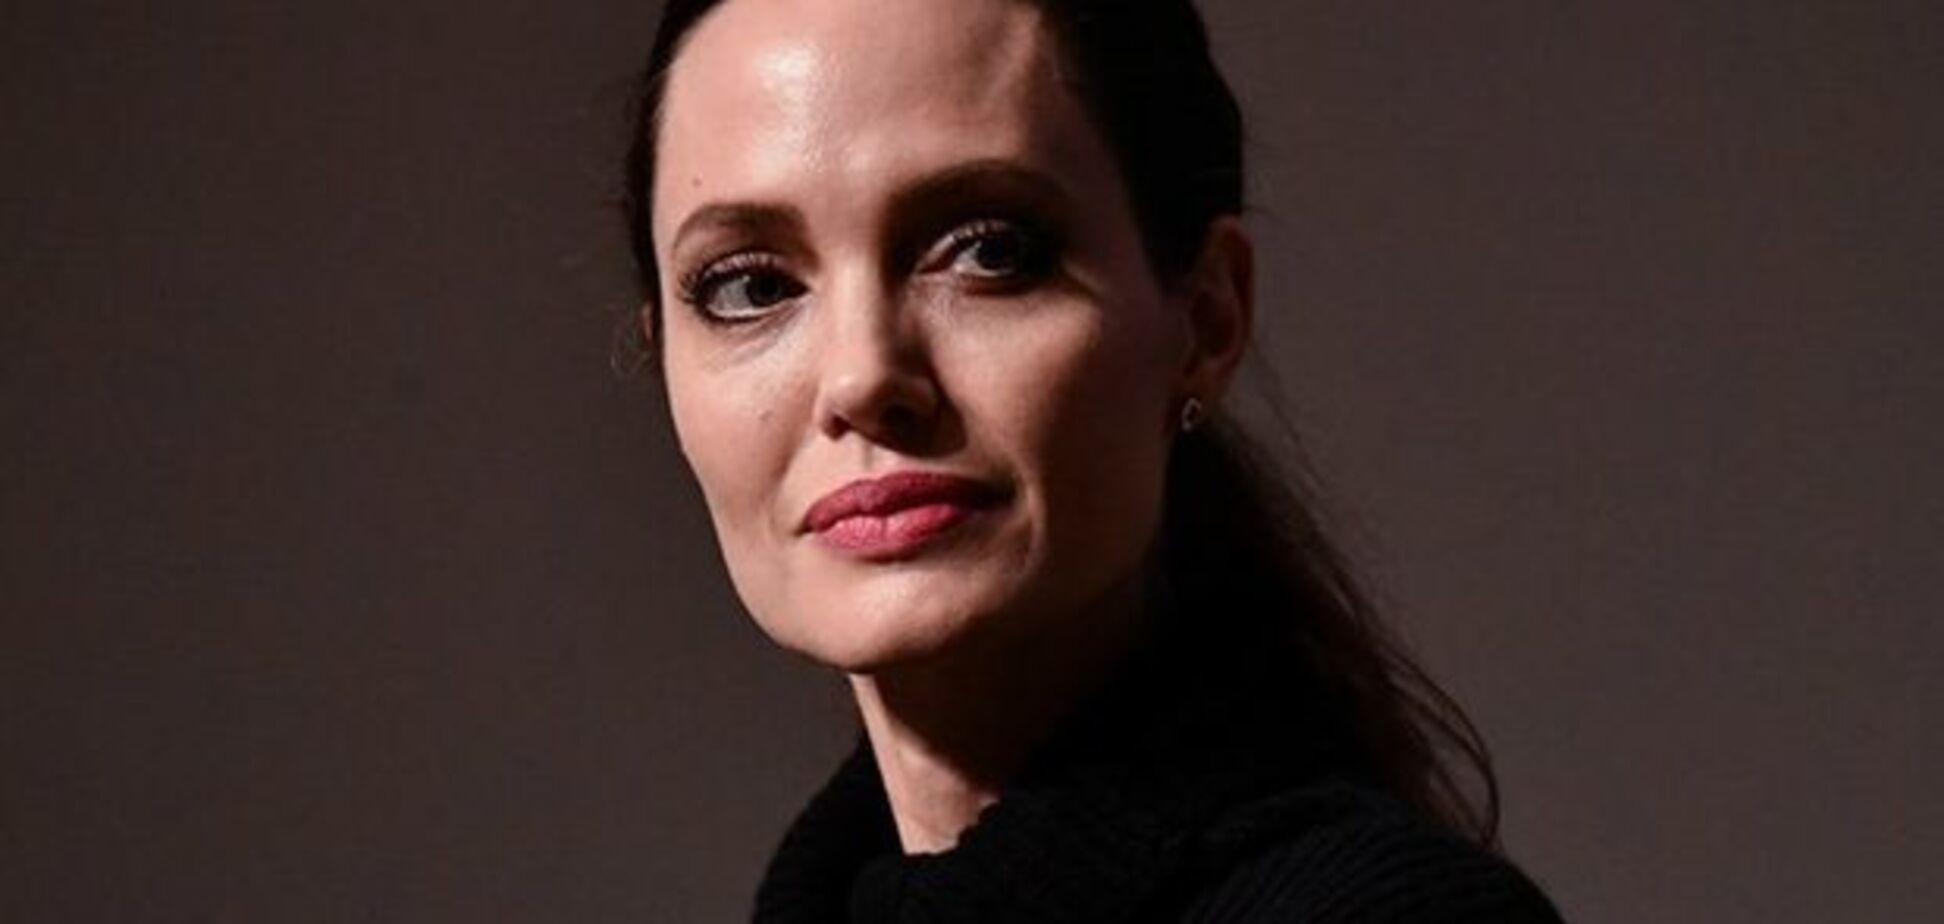 Уже выписали? Анджелину Джоли засекли в городе после слухов о дурдоме